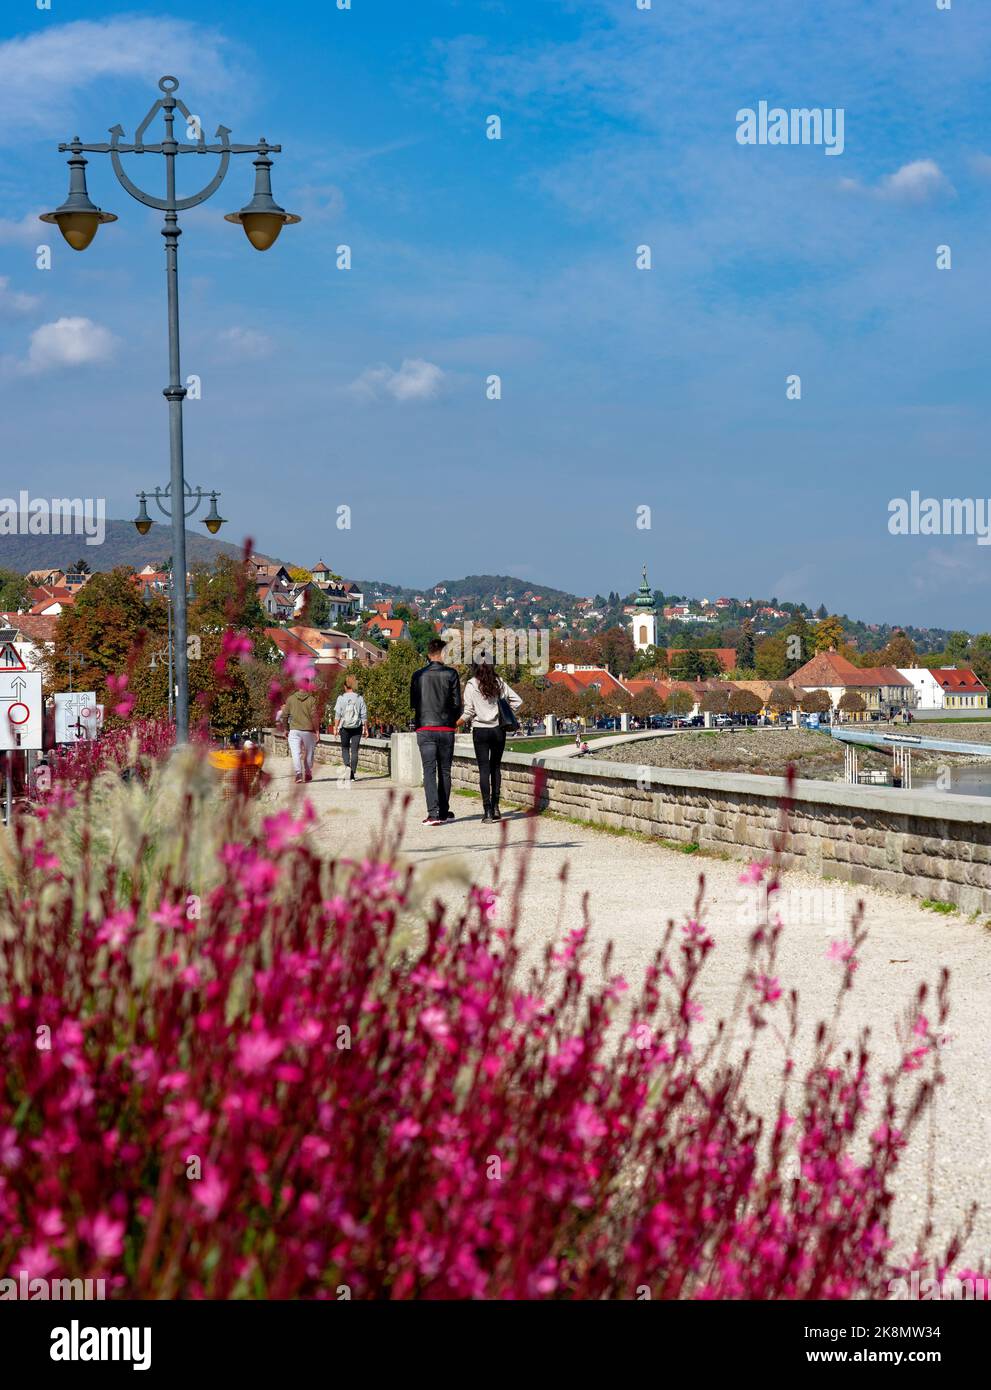 Hermoso lado del río en Szentendre junto al río Danubio con paseo en la acera y rosa Gaura lindheimeri flor Foto de stock